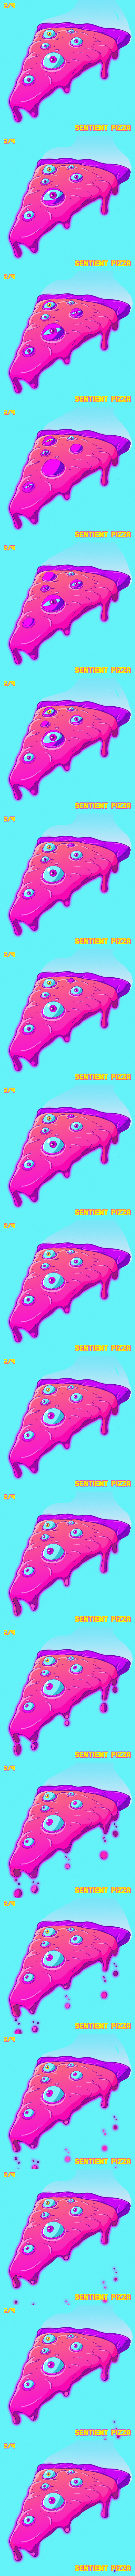 Sentient Pizza